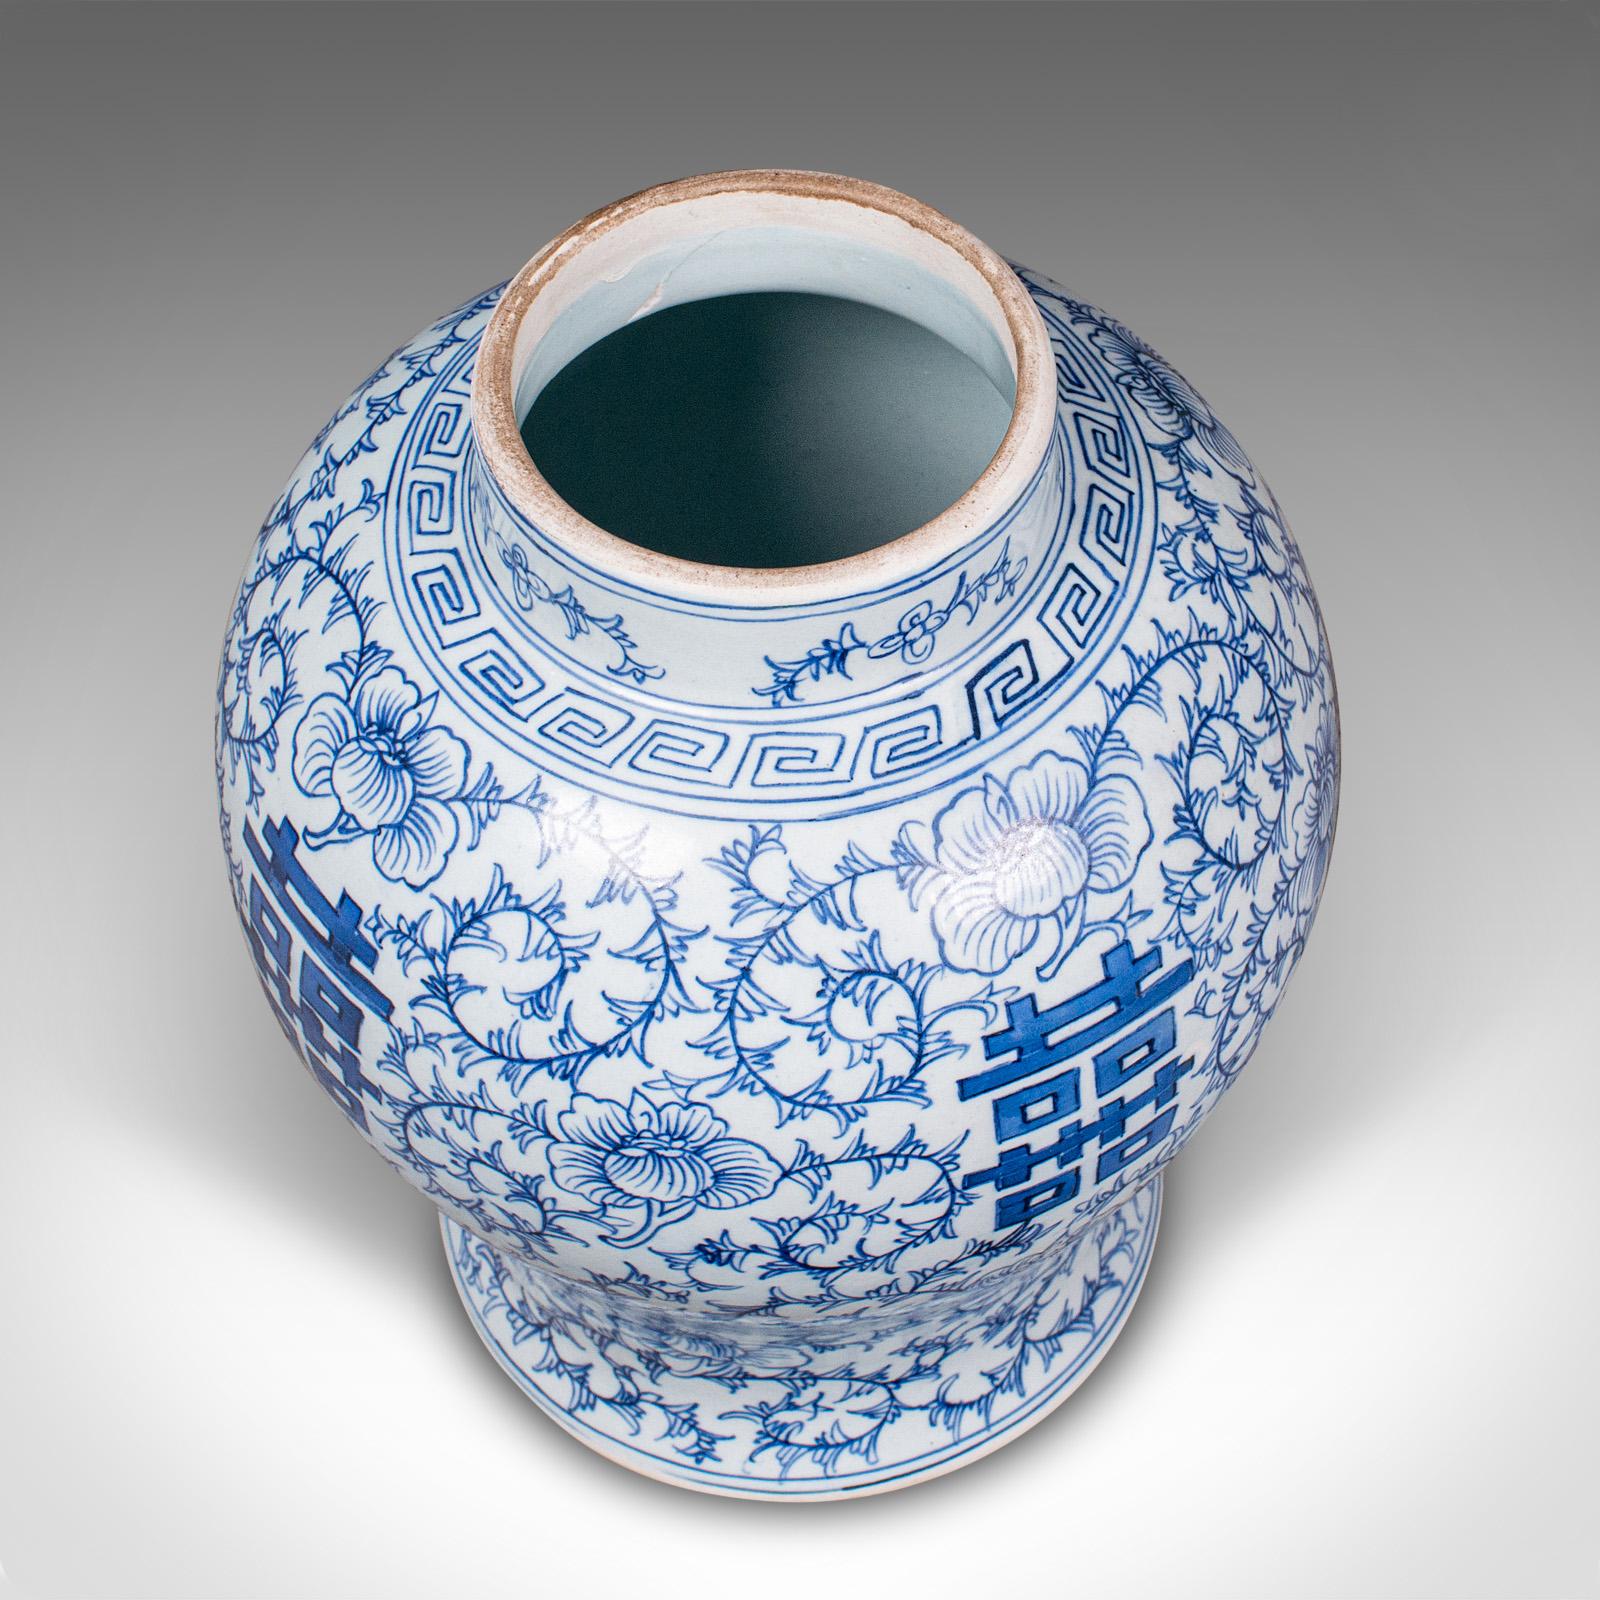 Vintage Decorative Flower Vase, Chinese, Ceramic, Urn, Spice Jar, Art Deco, 1930 For Sale 3